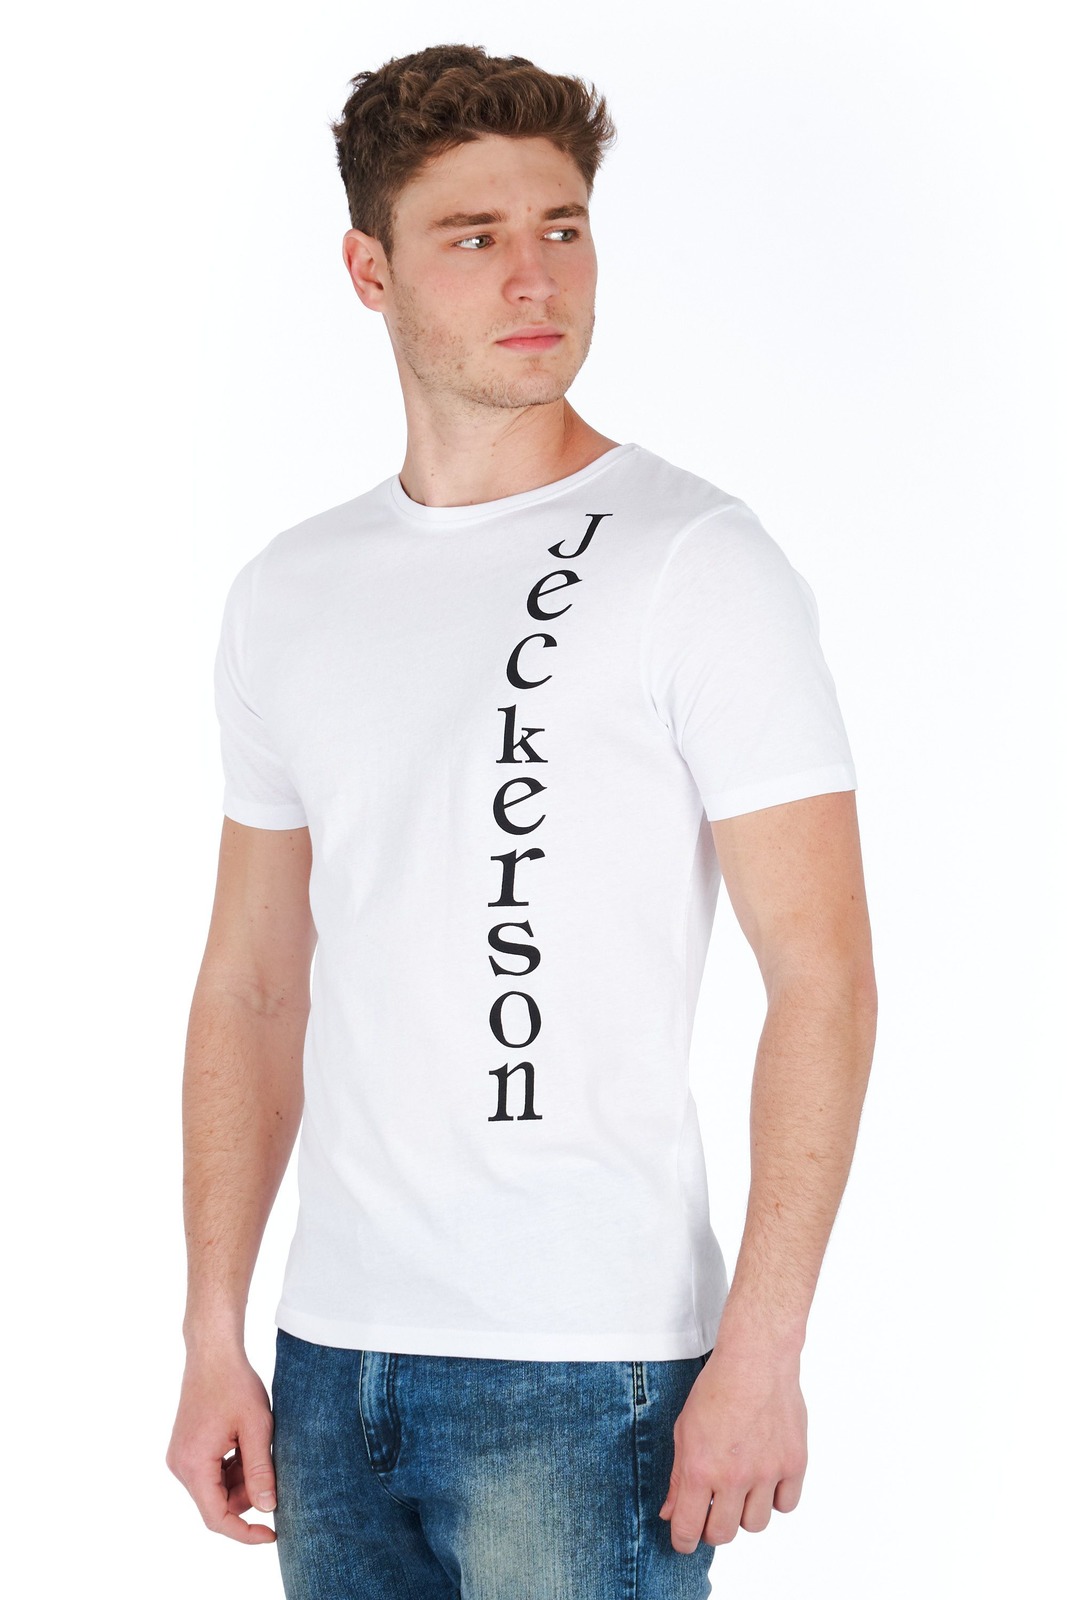 Jeckerson White T-shirts for Men - LOGO